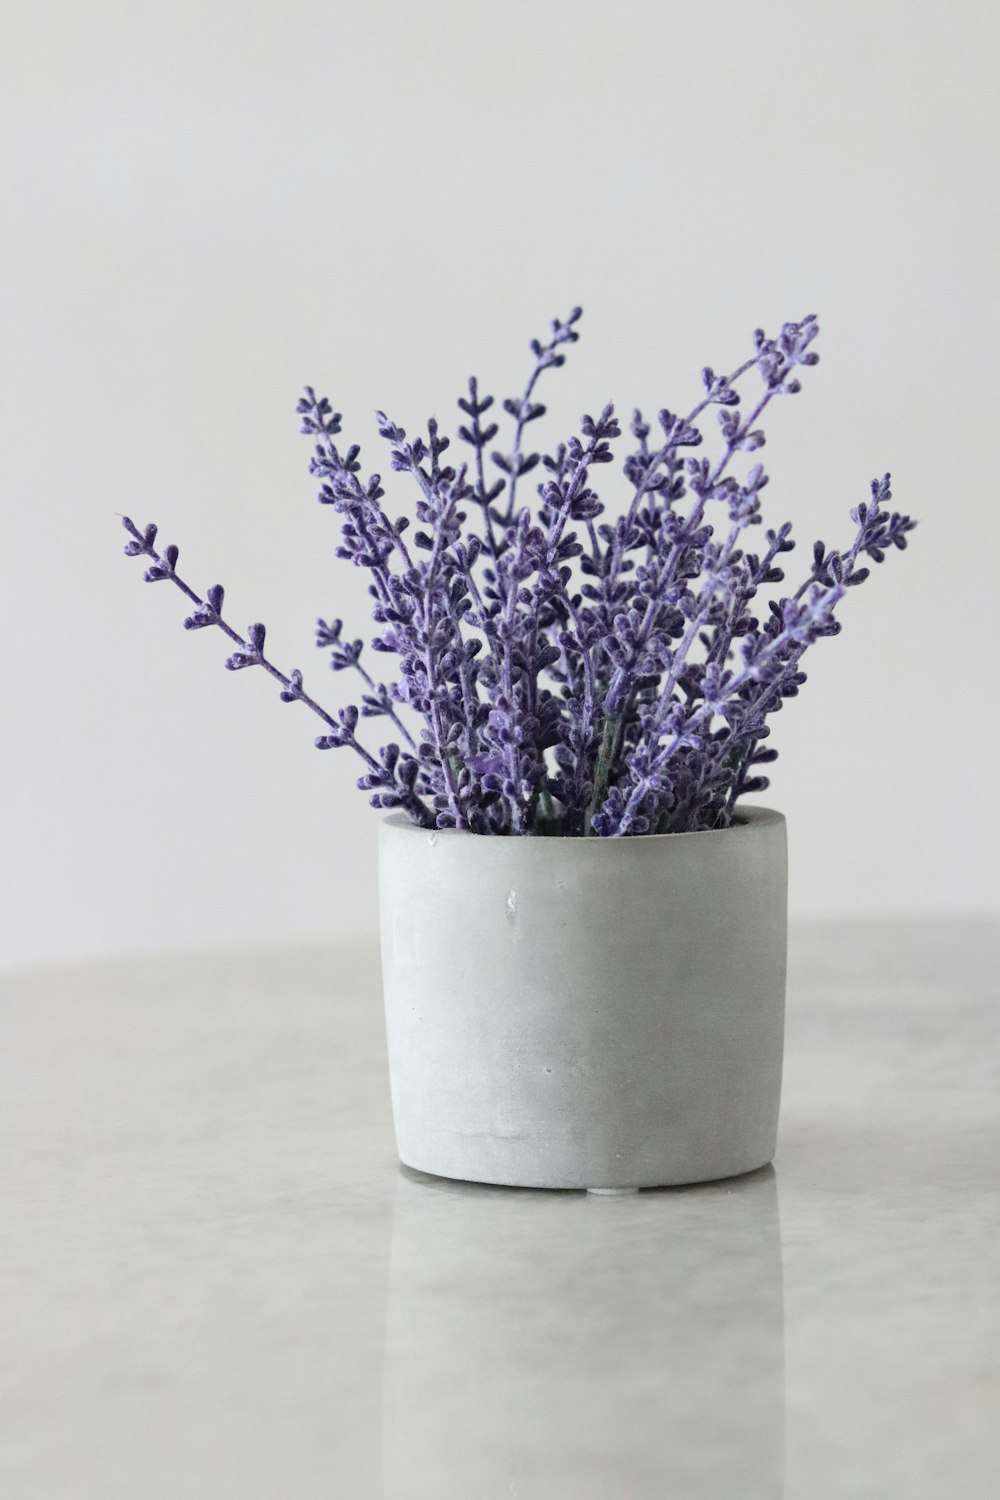 27+ Lavender Pictures | Download Free Images on Unsplash